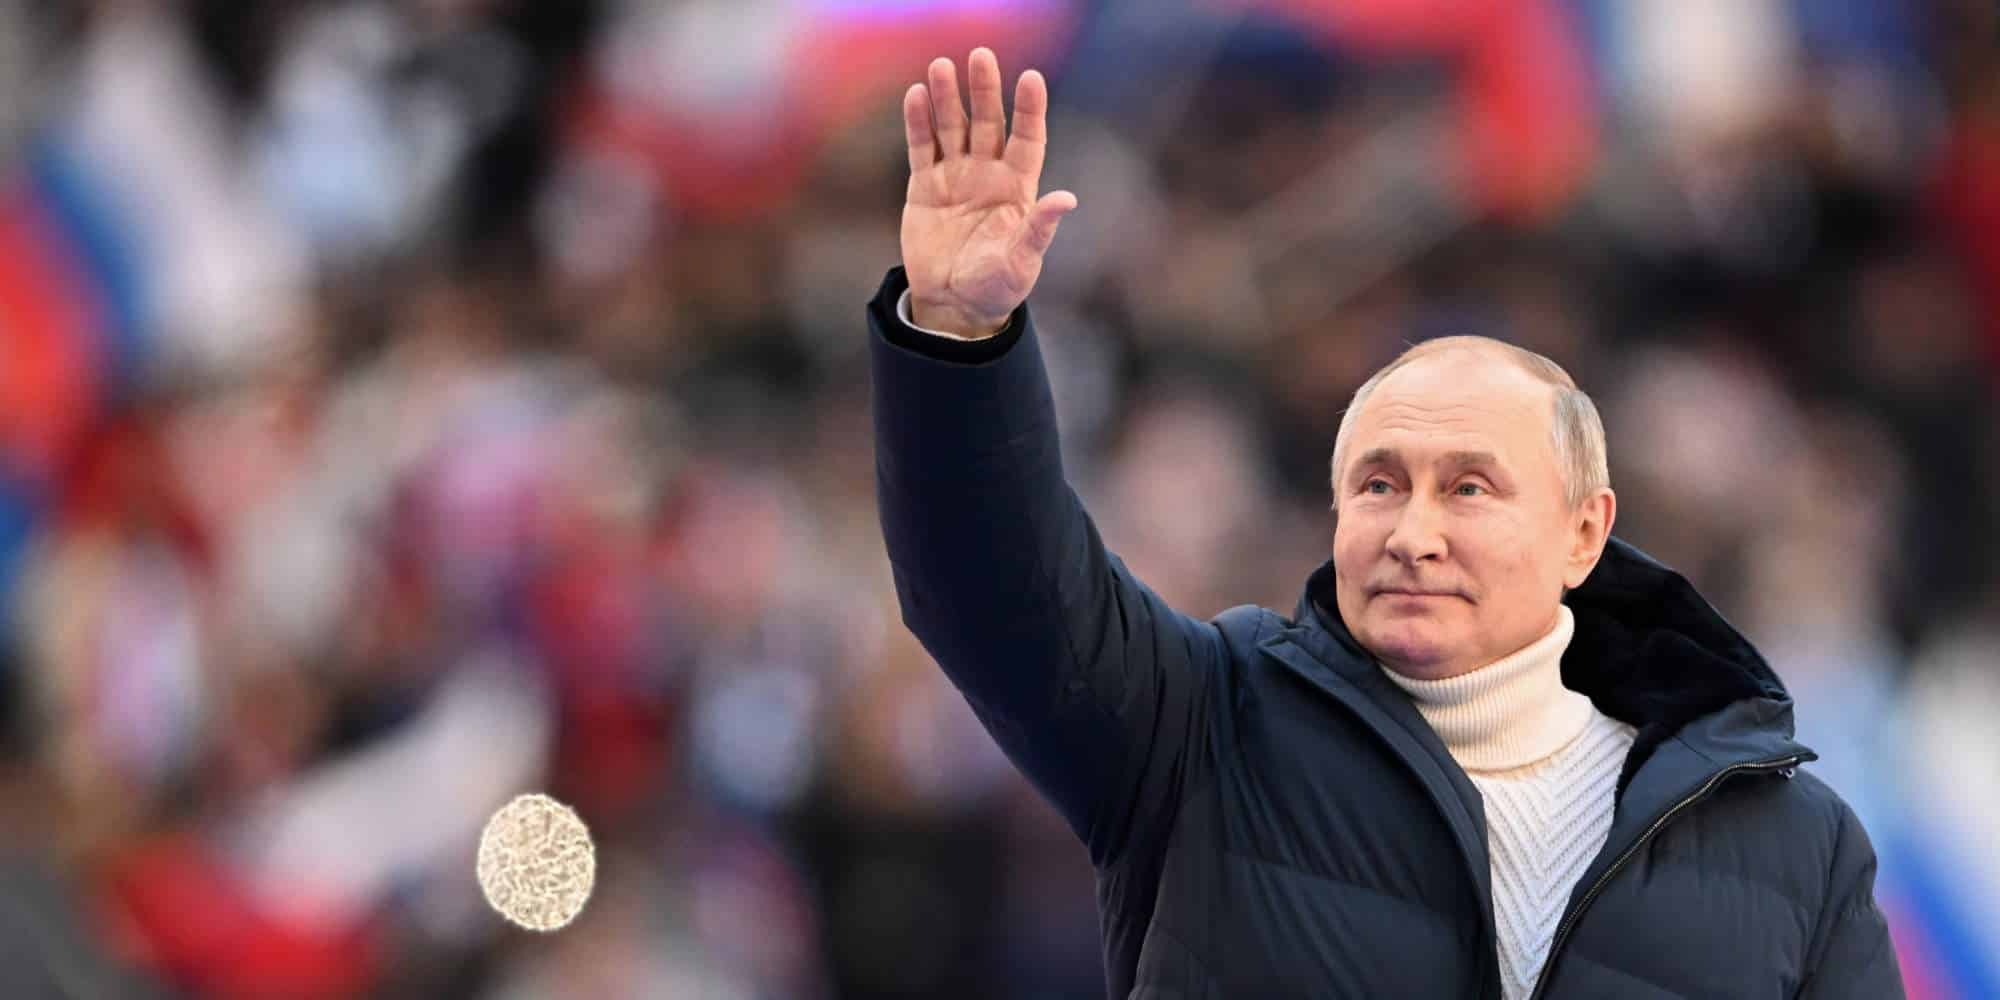 Ο Ρώσος πρόεδρος Βλαντιμίρ Πούτιν με το περίφημο μπουφάν των 12.000 ευρώ